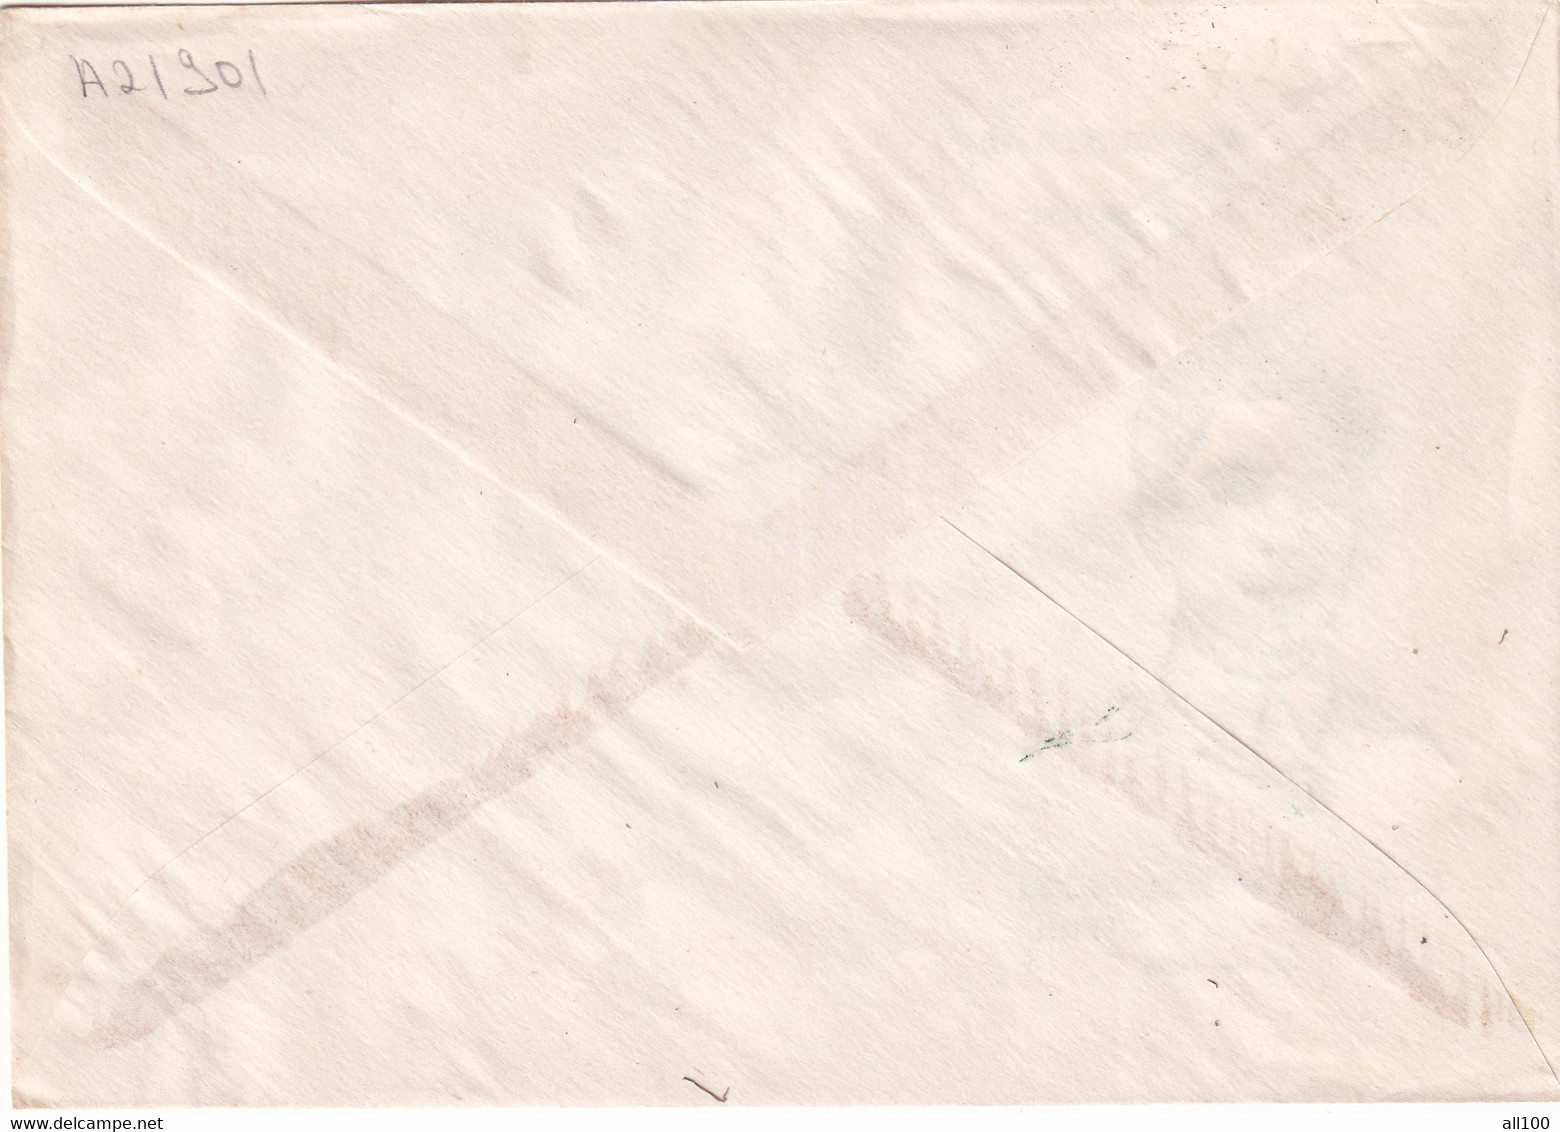 A21901 - Ecaterina Teodoroiu Centenarul Nasterii Societatea Filatelistilor Gorjeni Cover Envelope Unused 1994 Romania - Briefe U. Dokumente